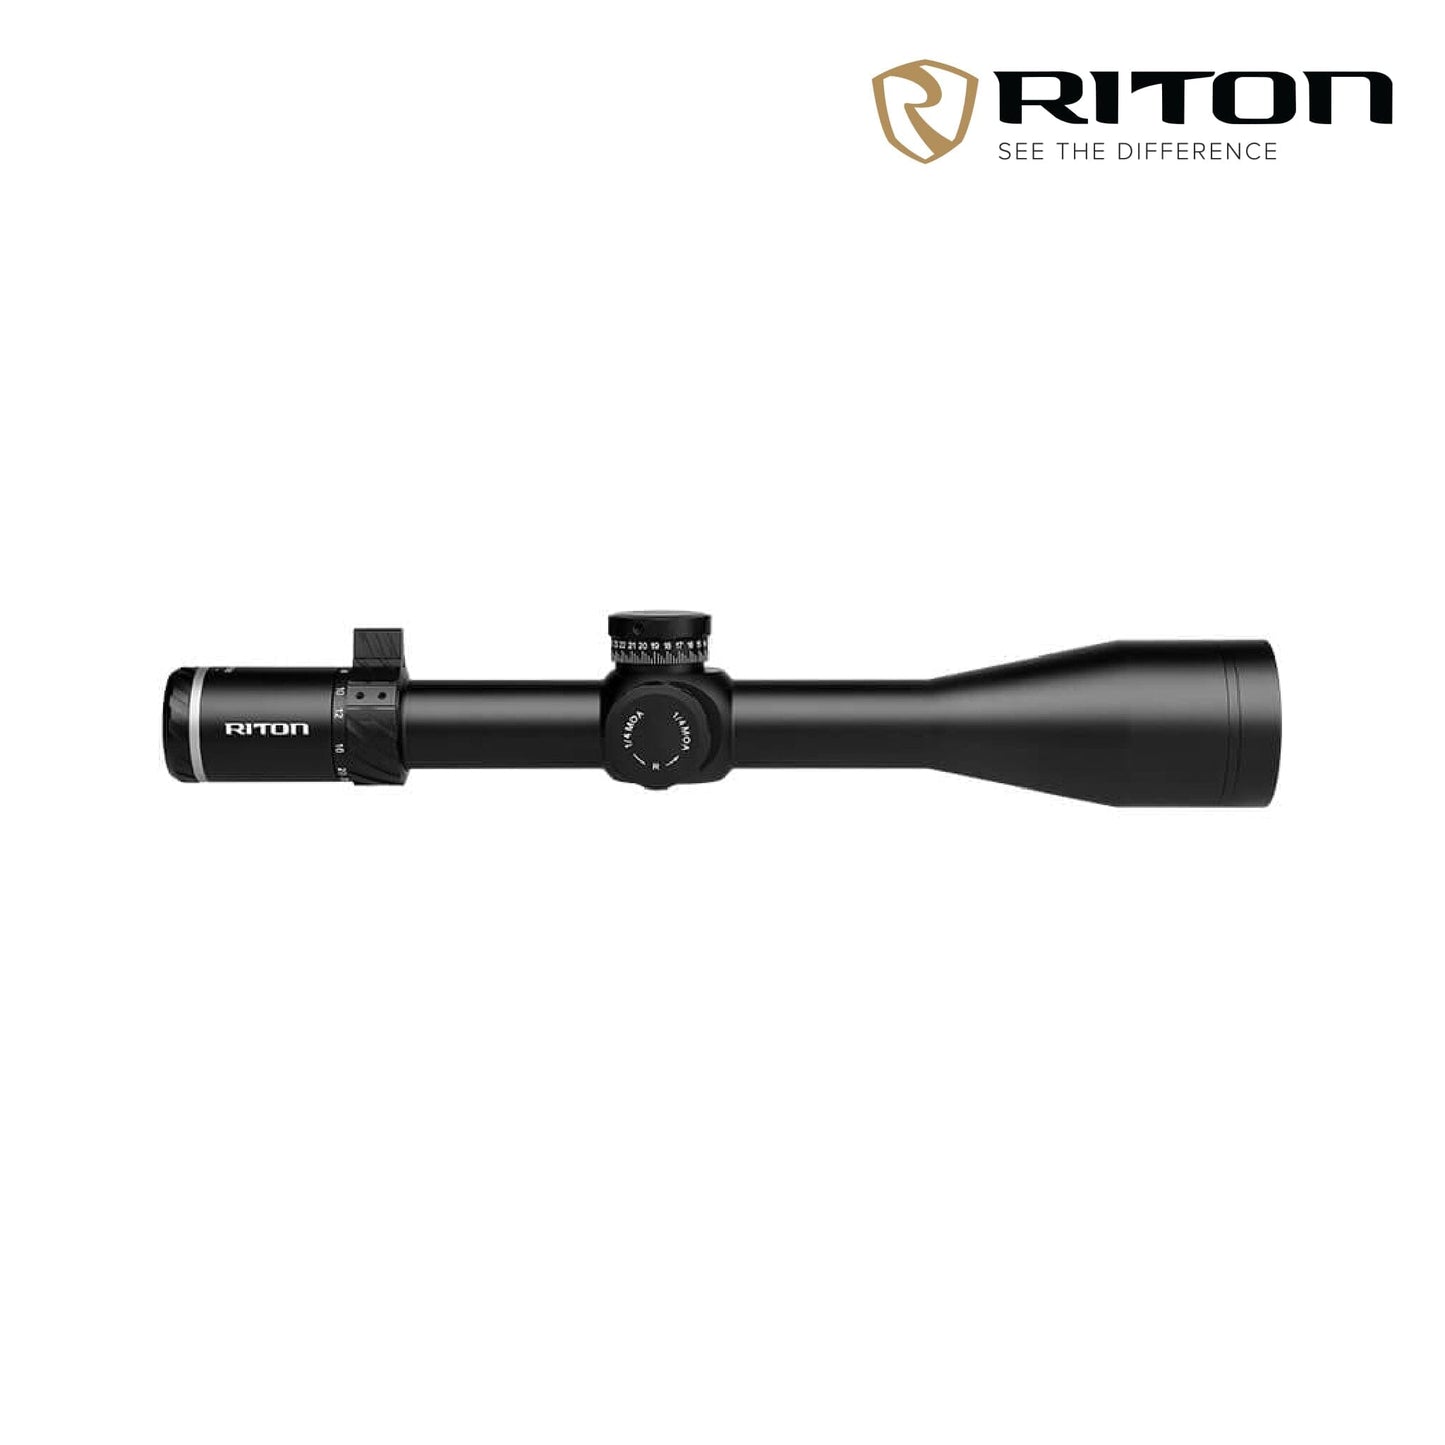 Riton Optics 5 Conquer 5-25x56 Rifle Scope Illuminated MOR (MOA) Reticle - 5C525AFI23 Rifle Scope Riton Optics 